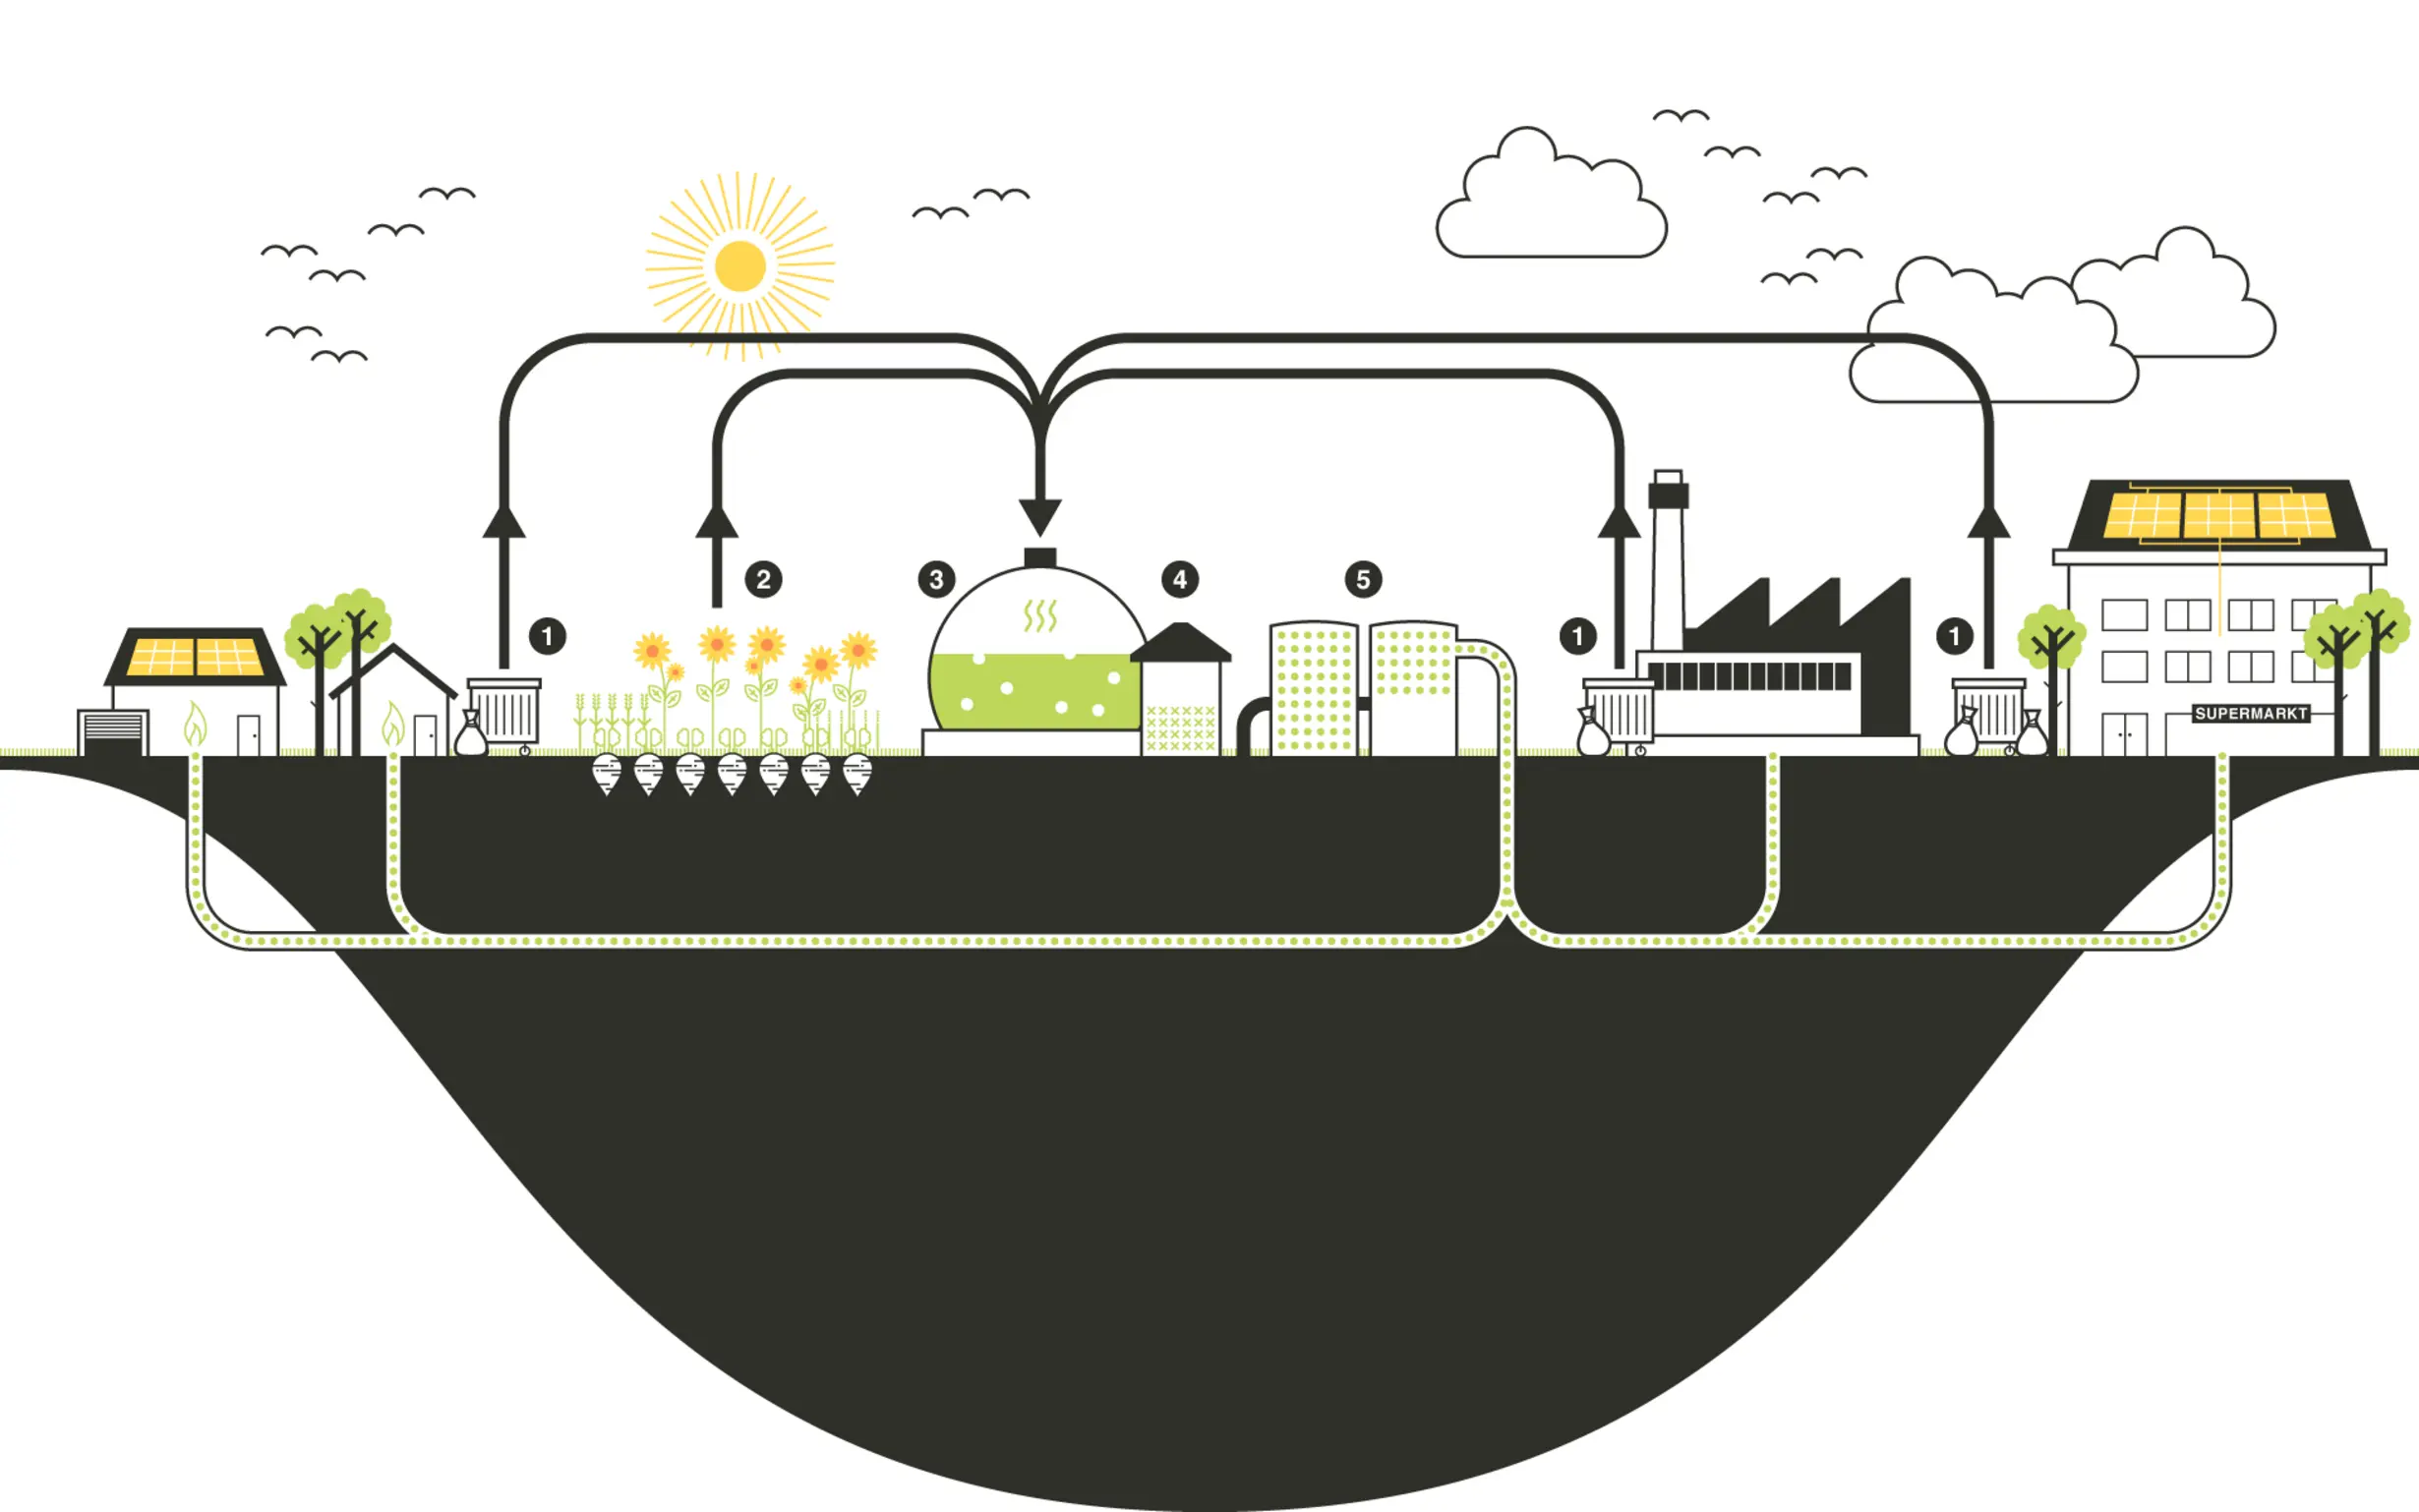 Funktionsweise Biogasanlage